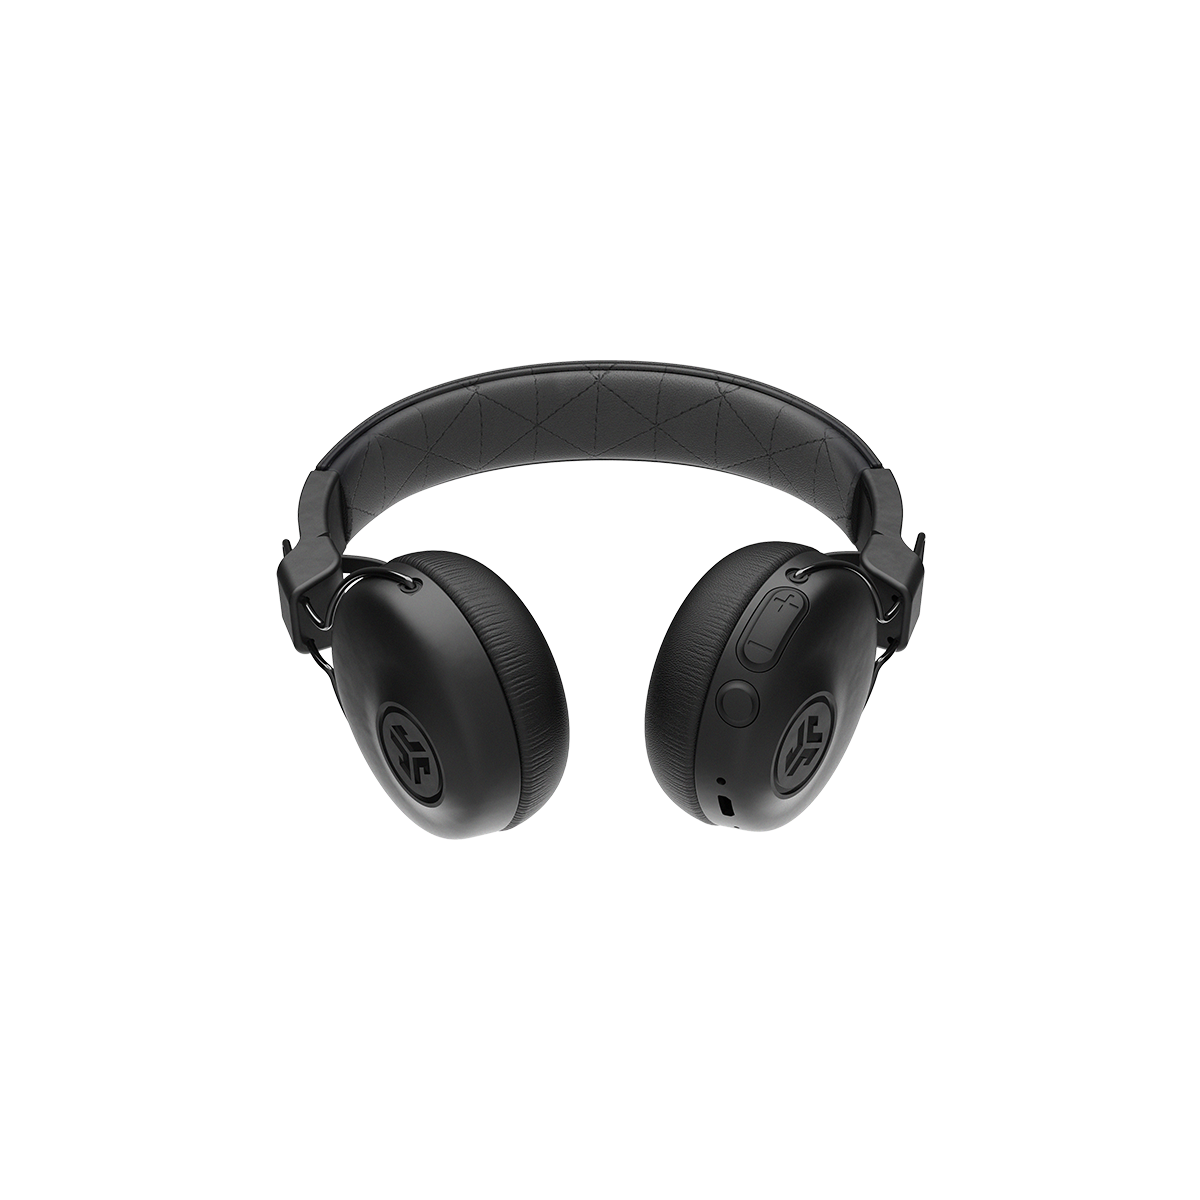 Tai nghe Bluetooth chụp tai TWS On-ear Jlab Studio ANC màu đen chống ồn thời gian nghe 34H Bluetooth 5.0 âm thanh EQ3 - Hàng chính hãng - BH 2 năm 1 đổi 1